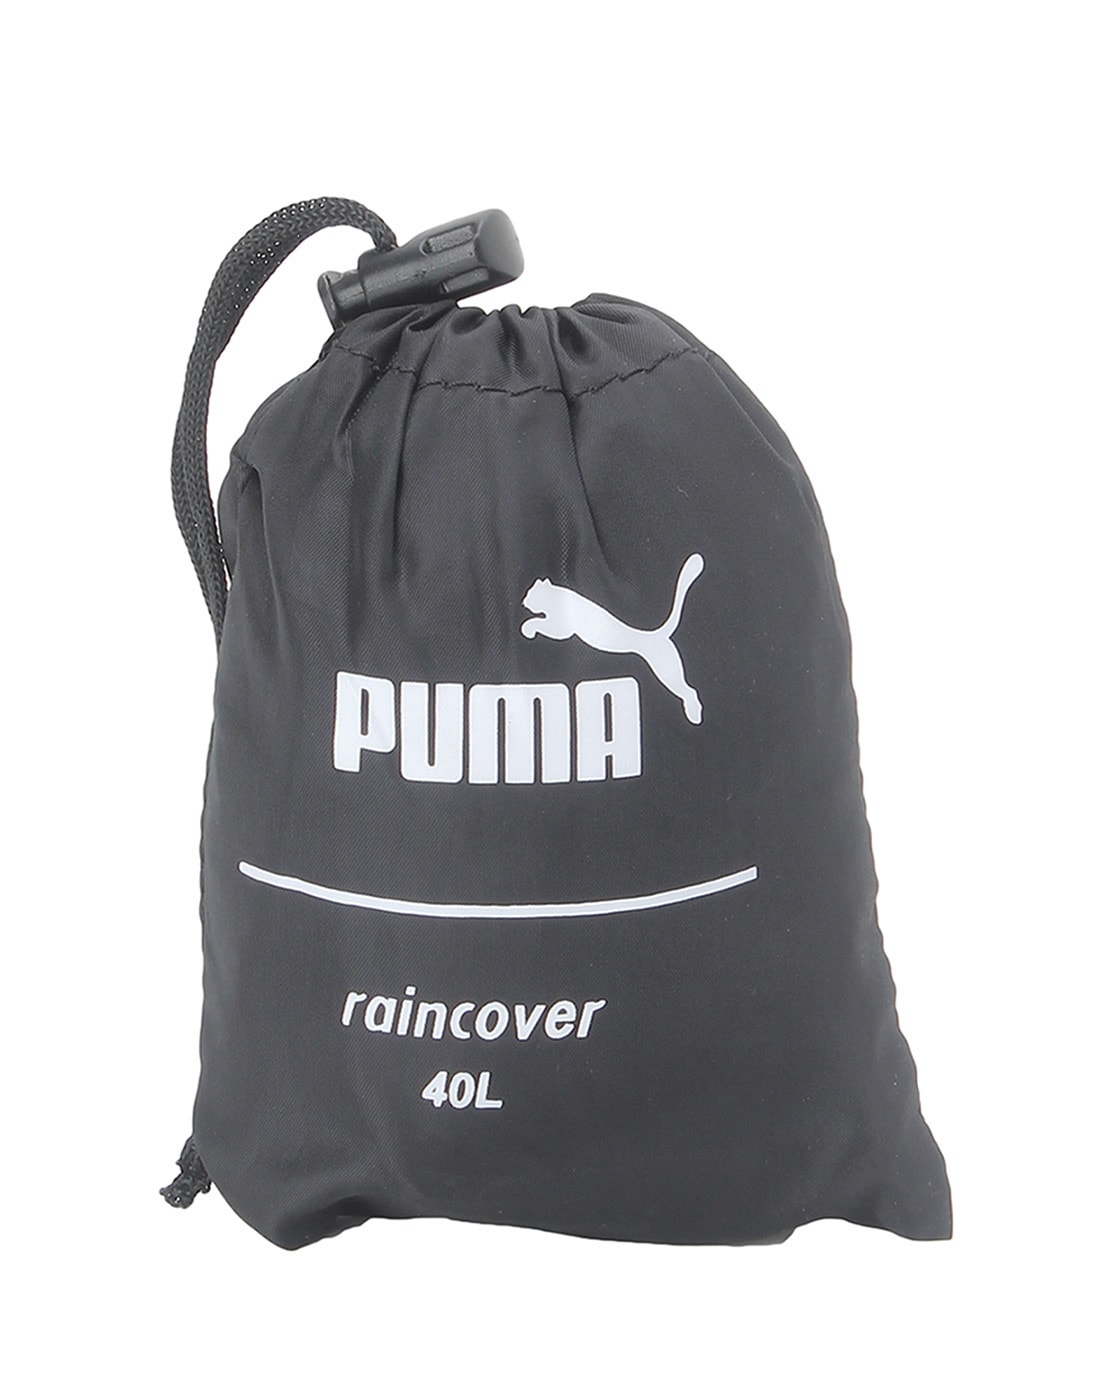 puma bag rain cover